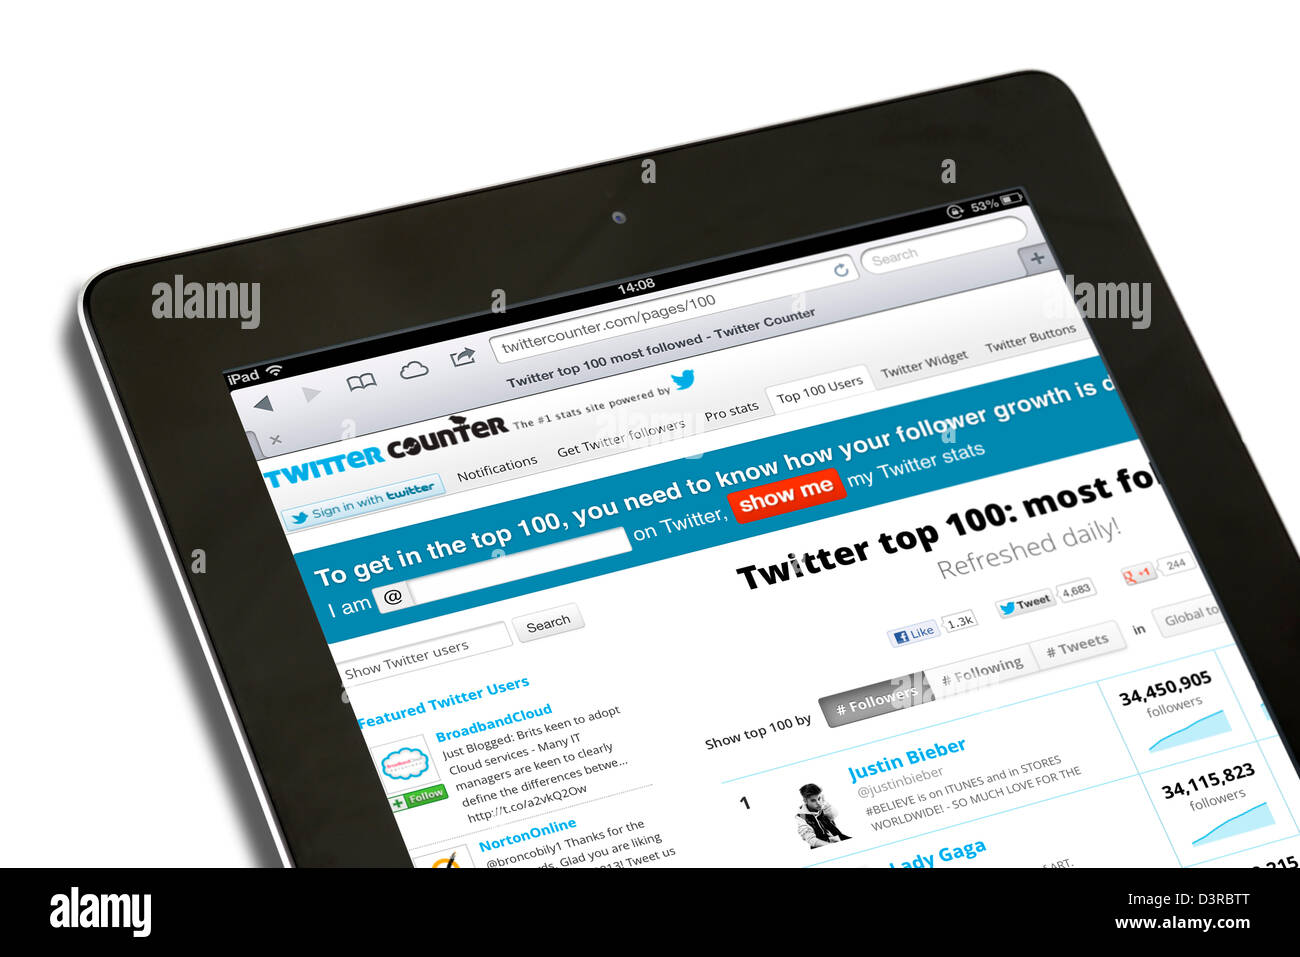 El sitio TwitterCounter, mostrando los más seguidos usuarios de Twitter, ver en un iPad 4ª generación Foto de stock